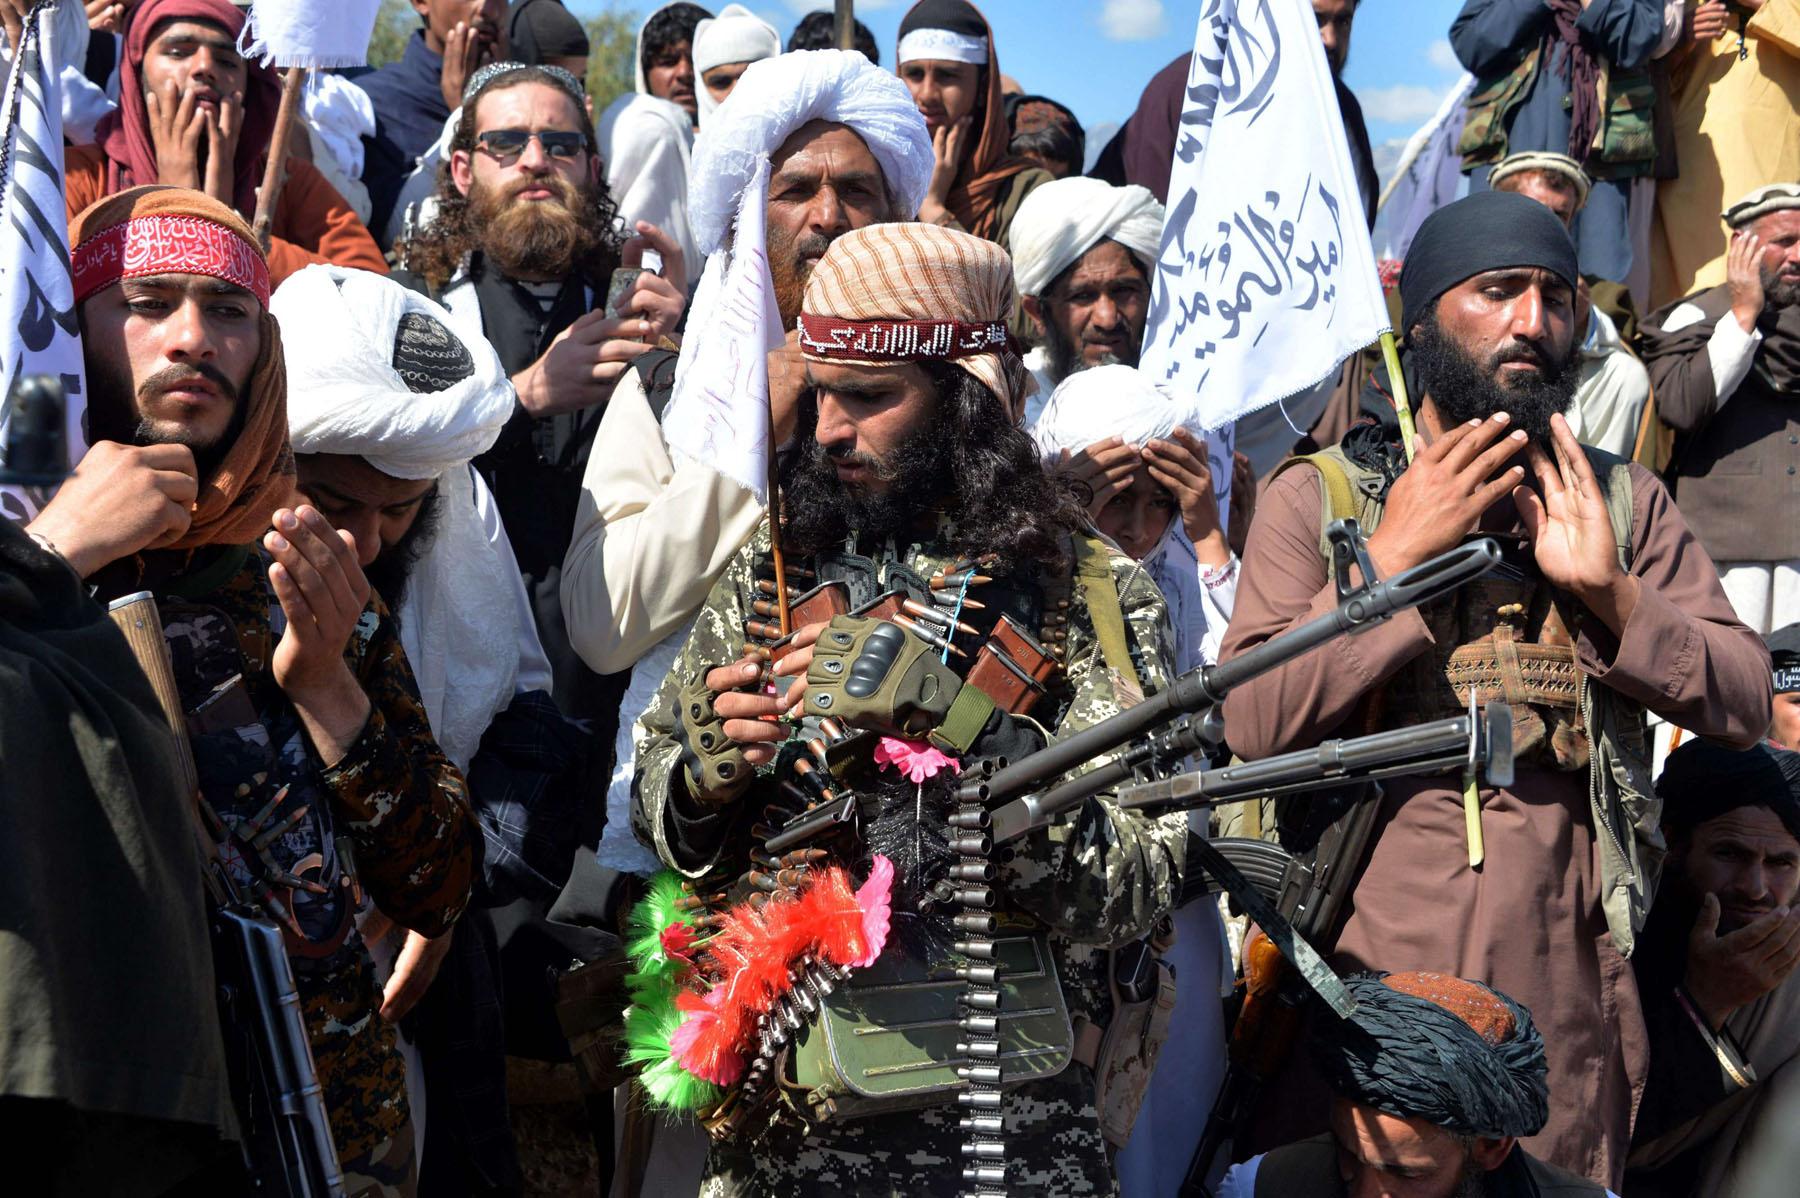 علاقات صداقة ومصاهرة وايدولوجيا مشتركة تجمع طالبان والقاعدة